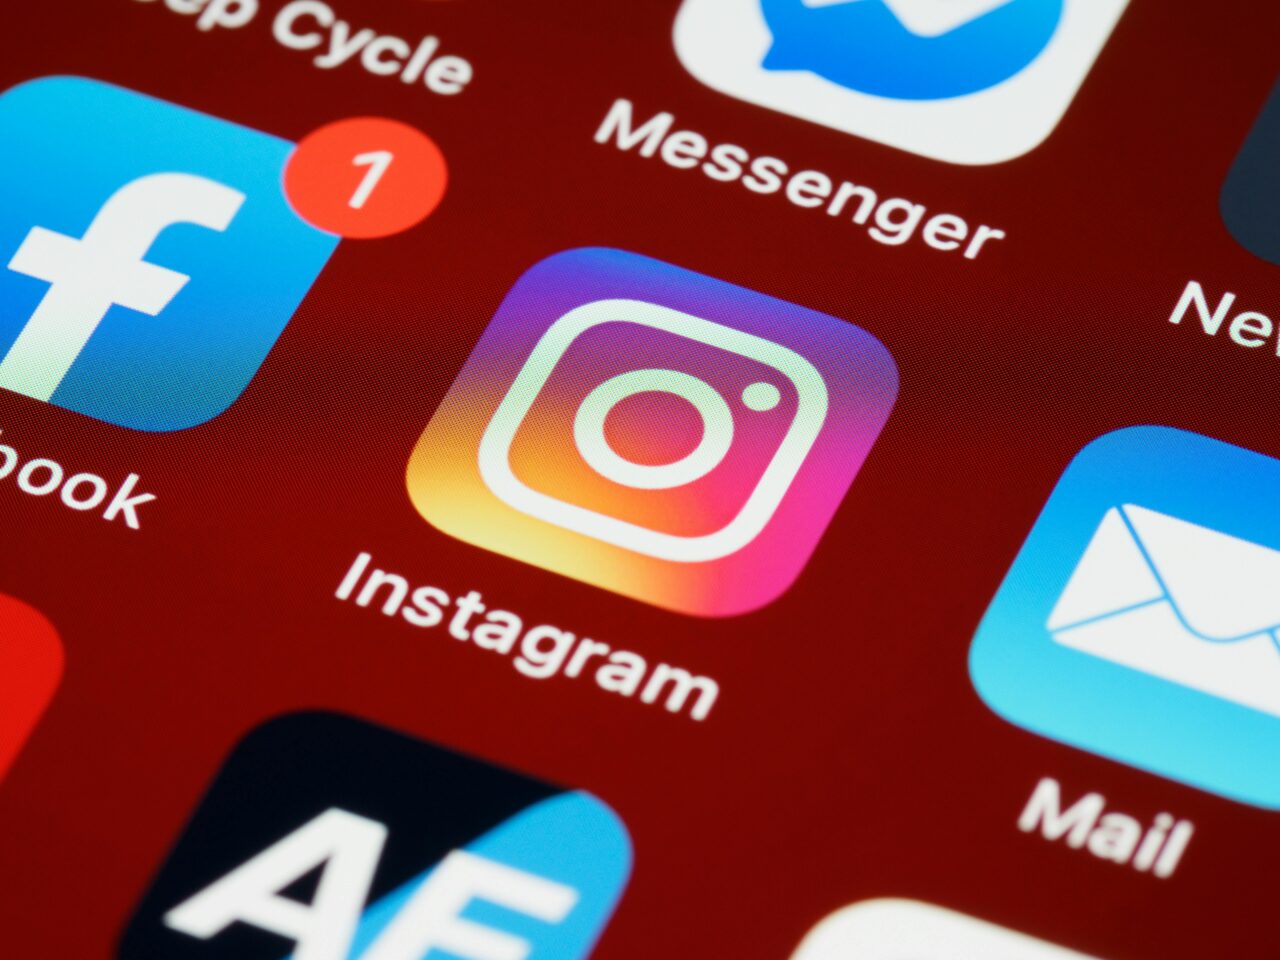 Media społecznościowe. Zbliżenie na ikonę aplikacji Instagram na ekranie smartfona z widocznymi ikonami innych aplikacji, takimi jak Facebook i Messenger w tle.